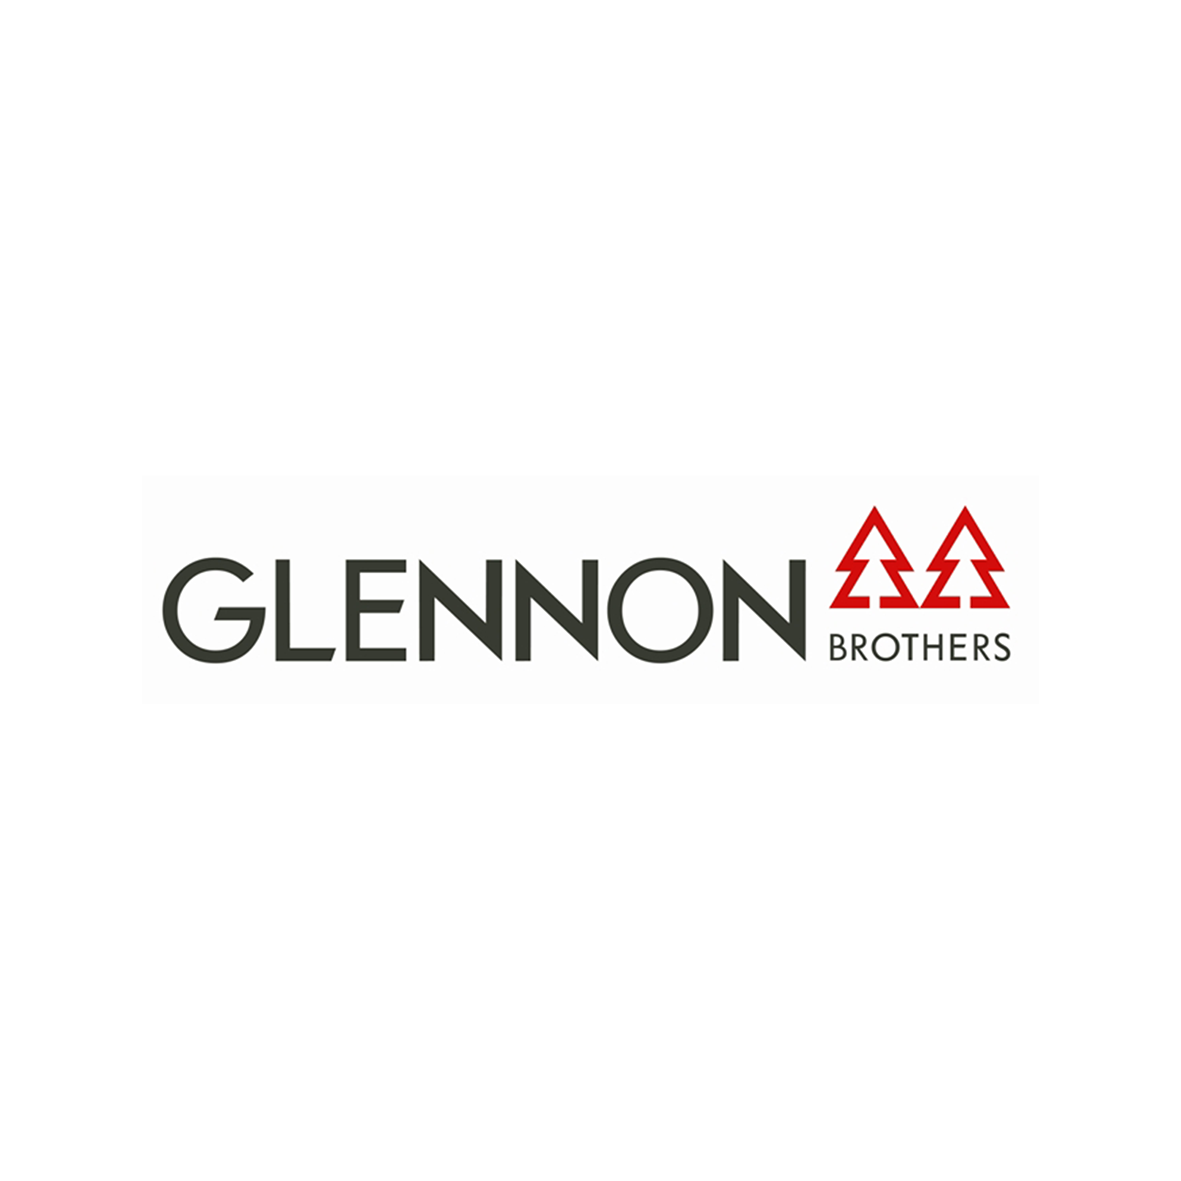 Glennon Brothers Company Logo